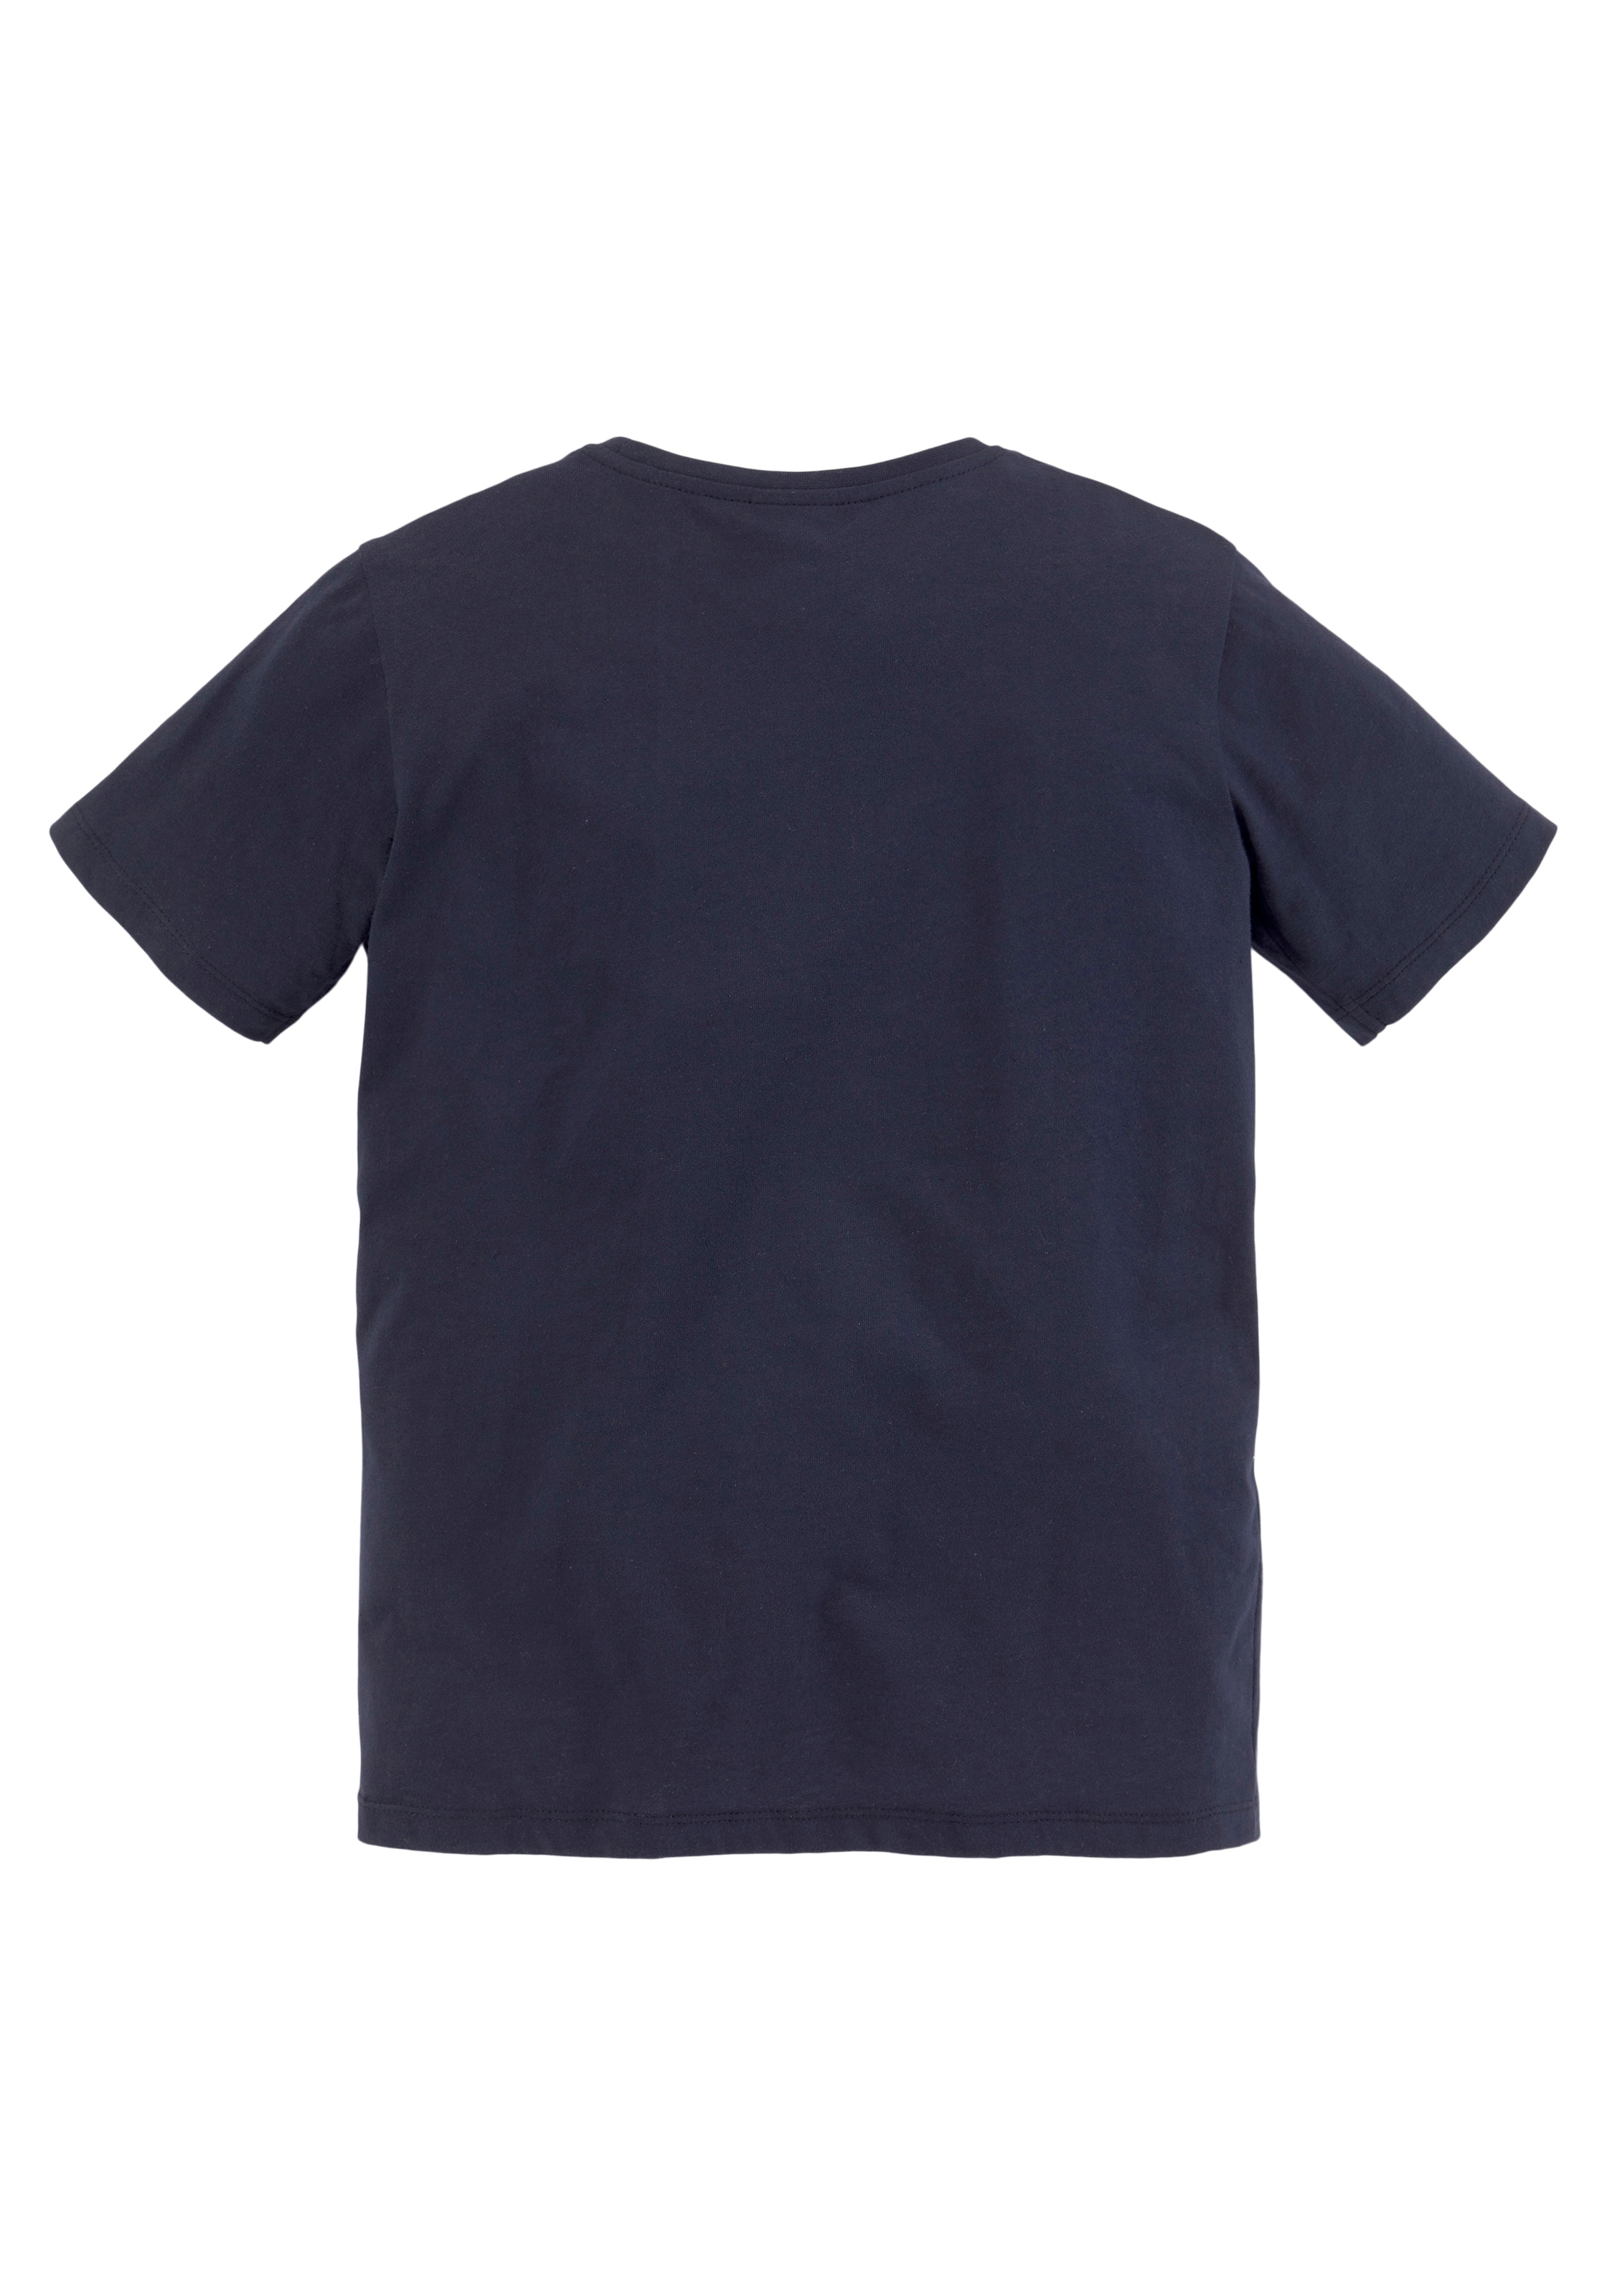 KIDSWORLD T-Shirt auf Sweatbermudas, Raten & kaufen tlg., 2), BIKER 2 (Set